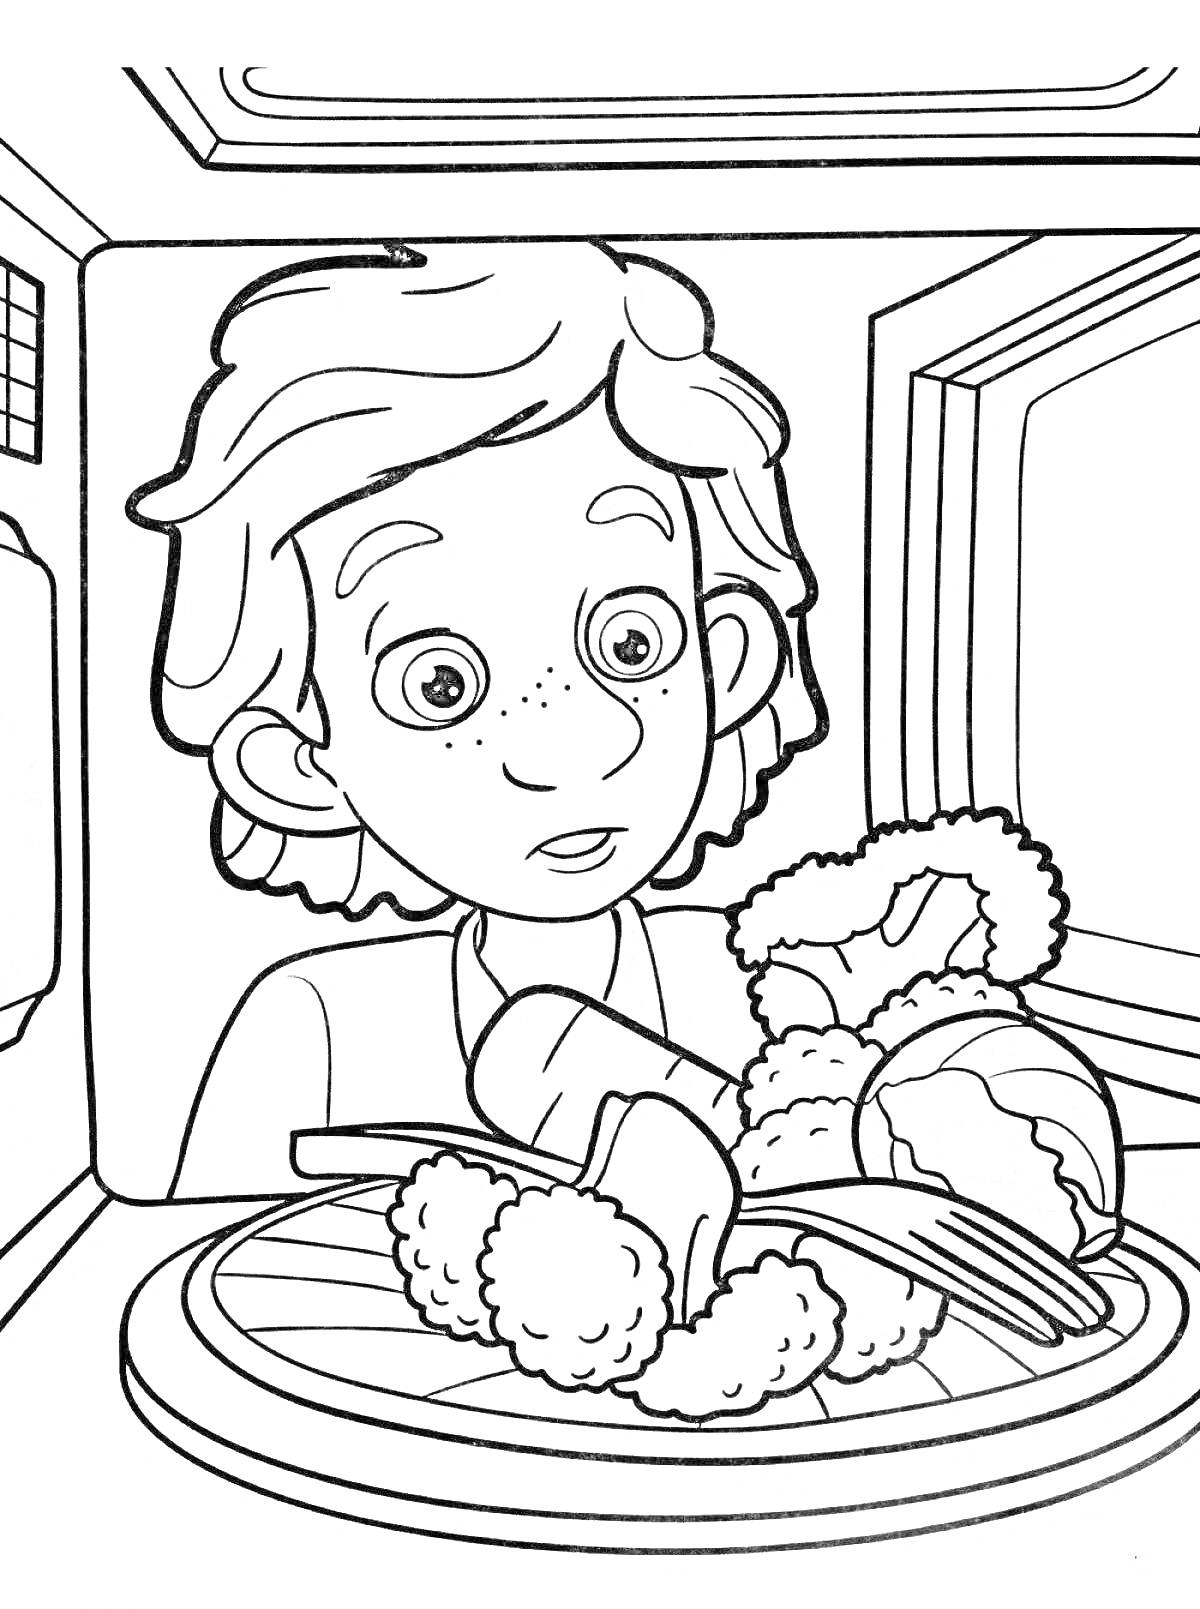 Раскраска Мальчик смотрит на тарелку с едой, включая куриные ножки и овощи